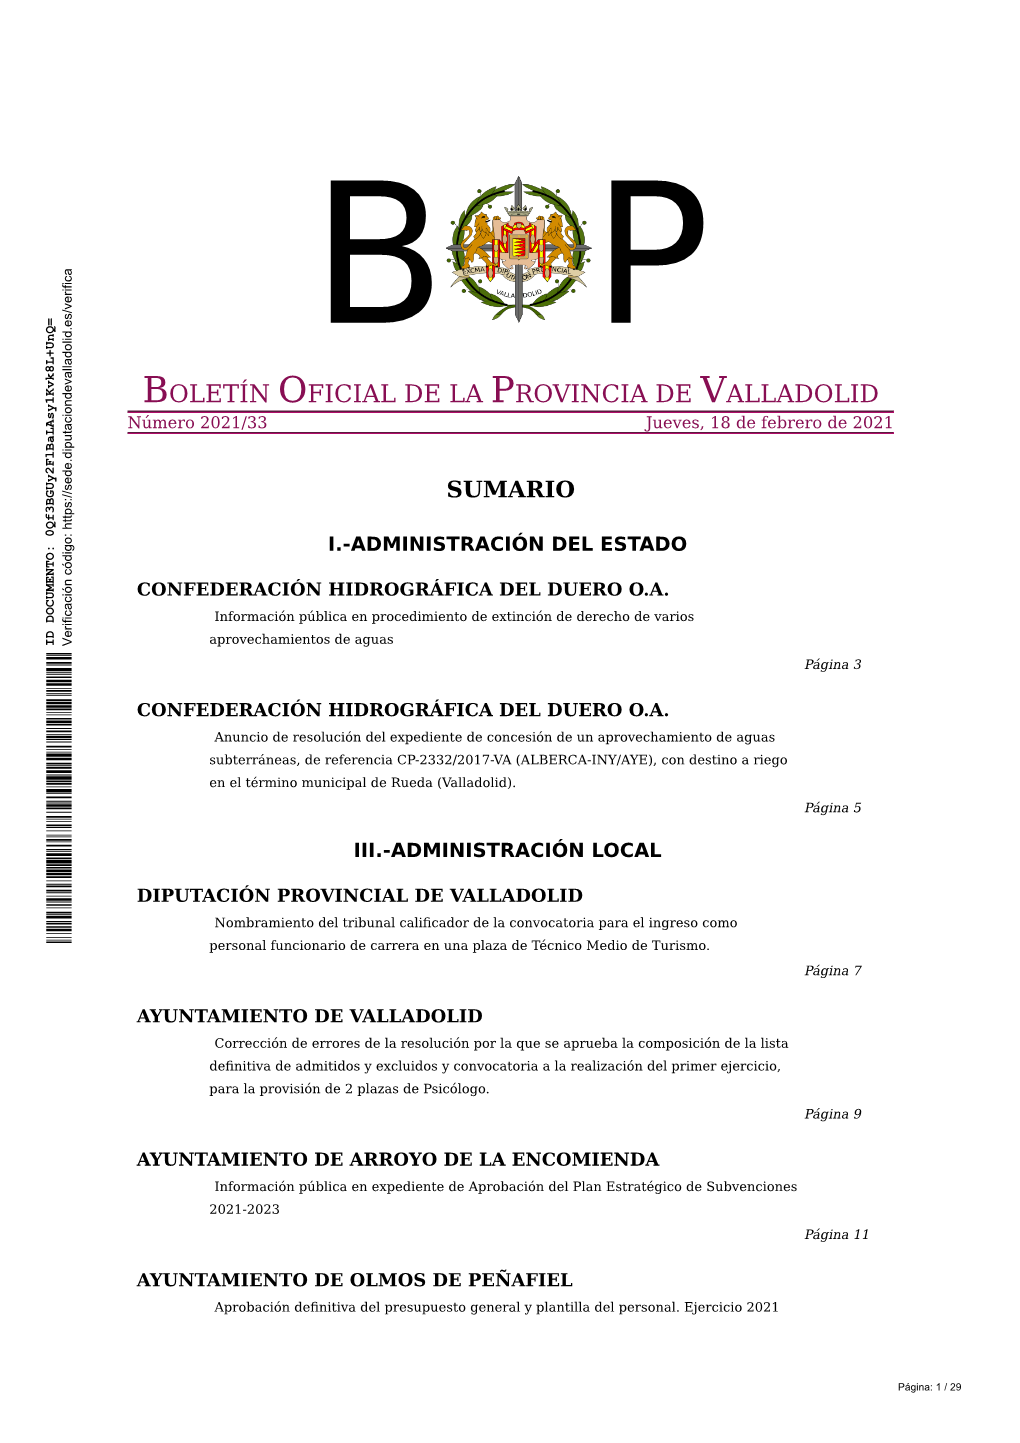 BOLETÍN OFICIAL DE LA PROVINCIA DE VALLADOLID Número 2021/33 Jueves, 18 De Febrero De 2021